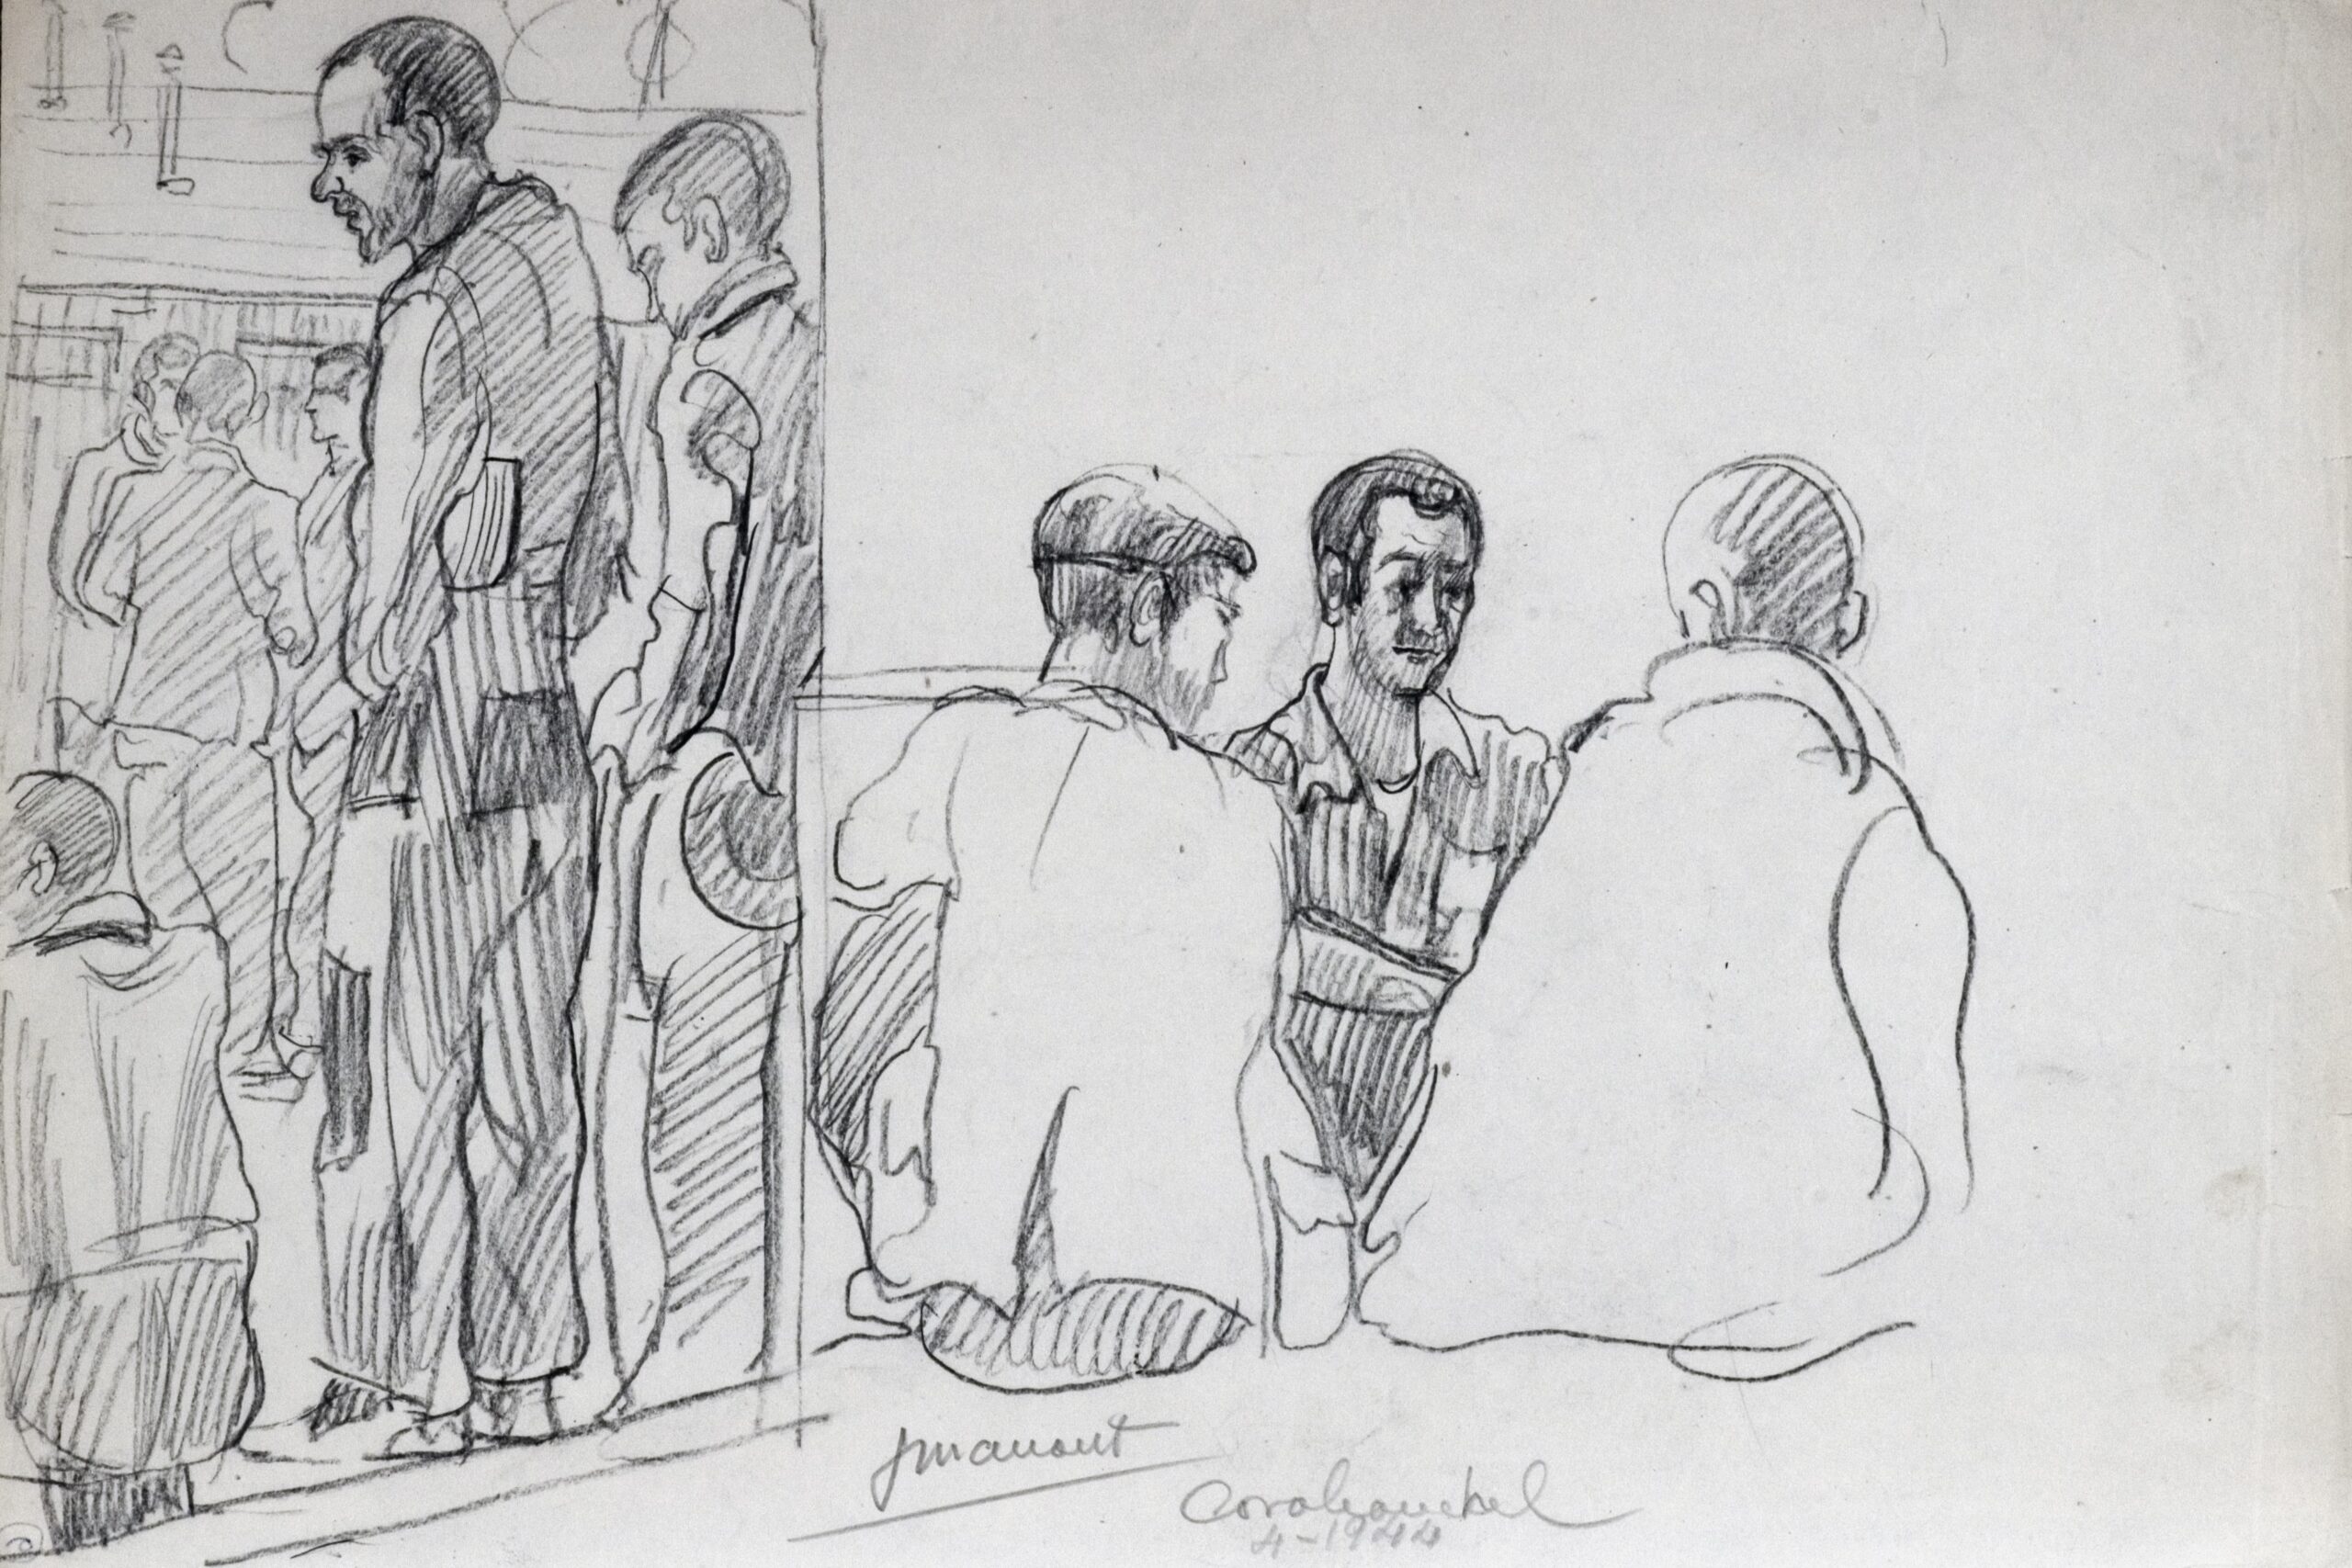 Dibujo de José Manaut titulado Grupo de pie, a la izqa; a la dcha, tres hombres sentados, Carabanchel, 1944. Carboncillo sobre papel.